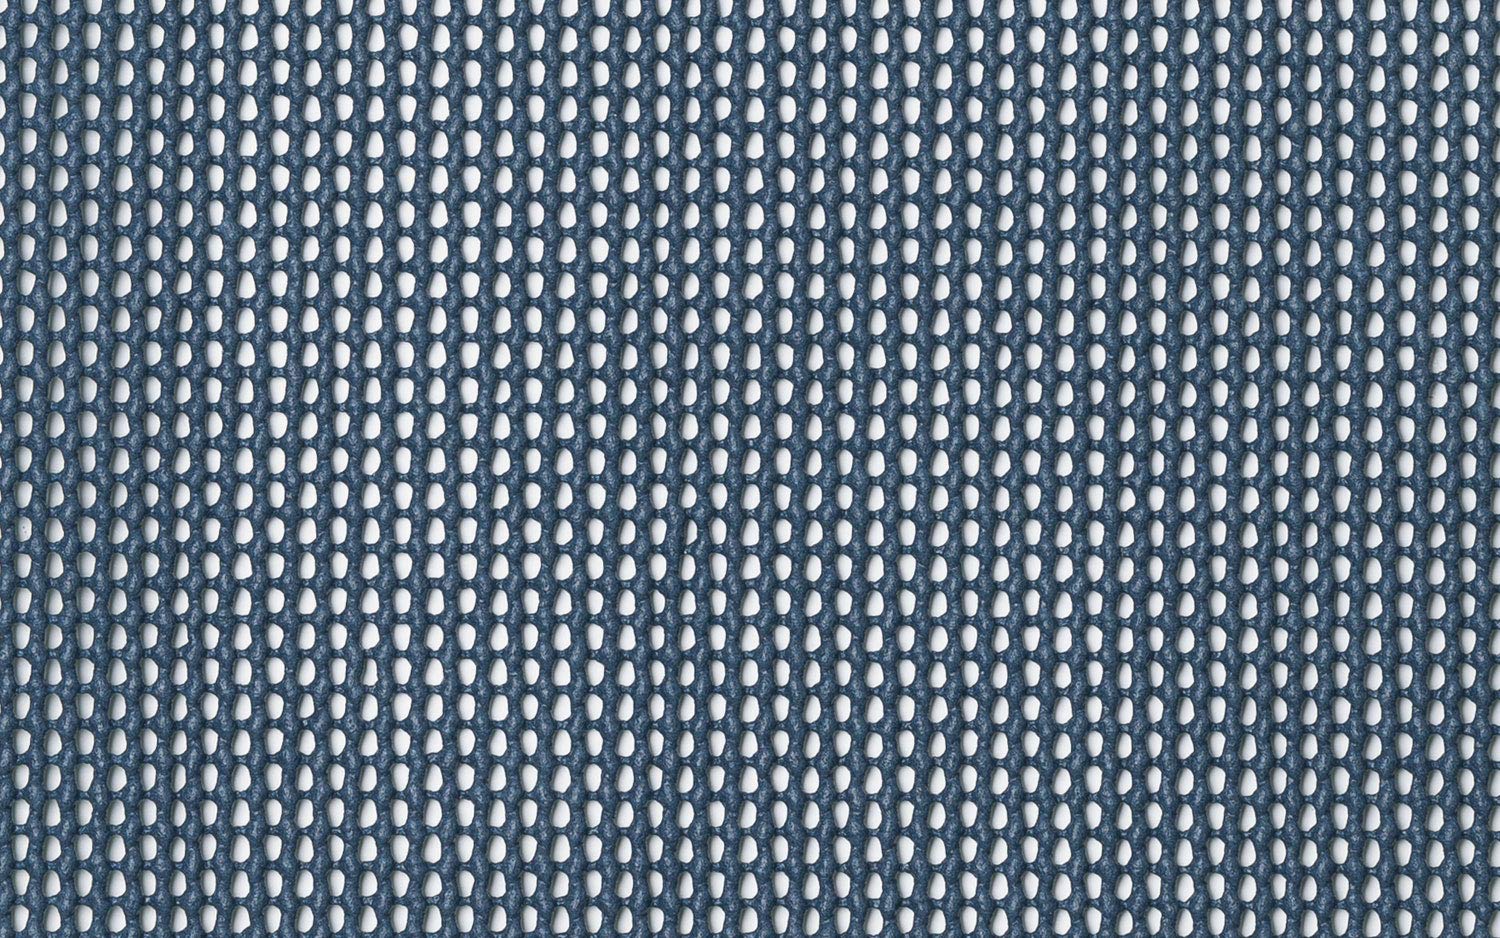 BERGER Vorzeltteppich Soft blau versch. Größen - zuschneidbarer Camping Teppich - formfest, weich, blau, leicht, waschbar, robust Zeltteppich für Zelte Balkone Terrassen Inkl. Tragetasche